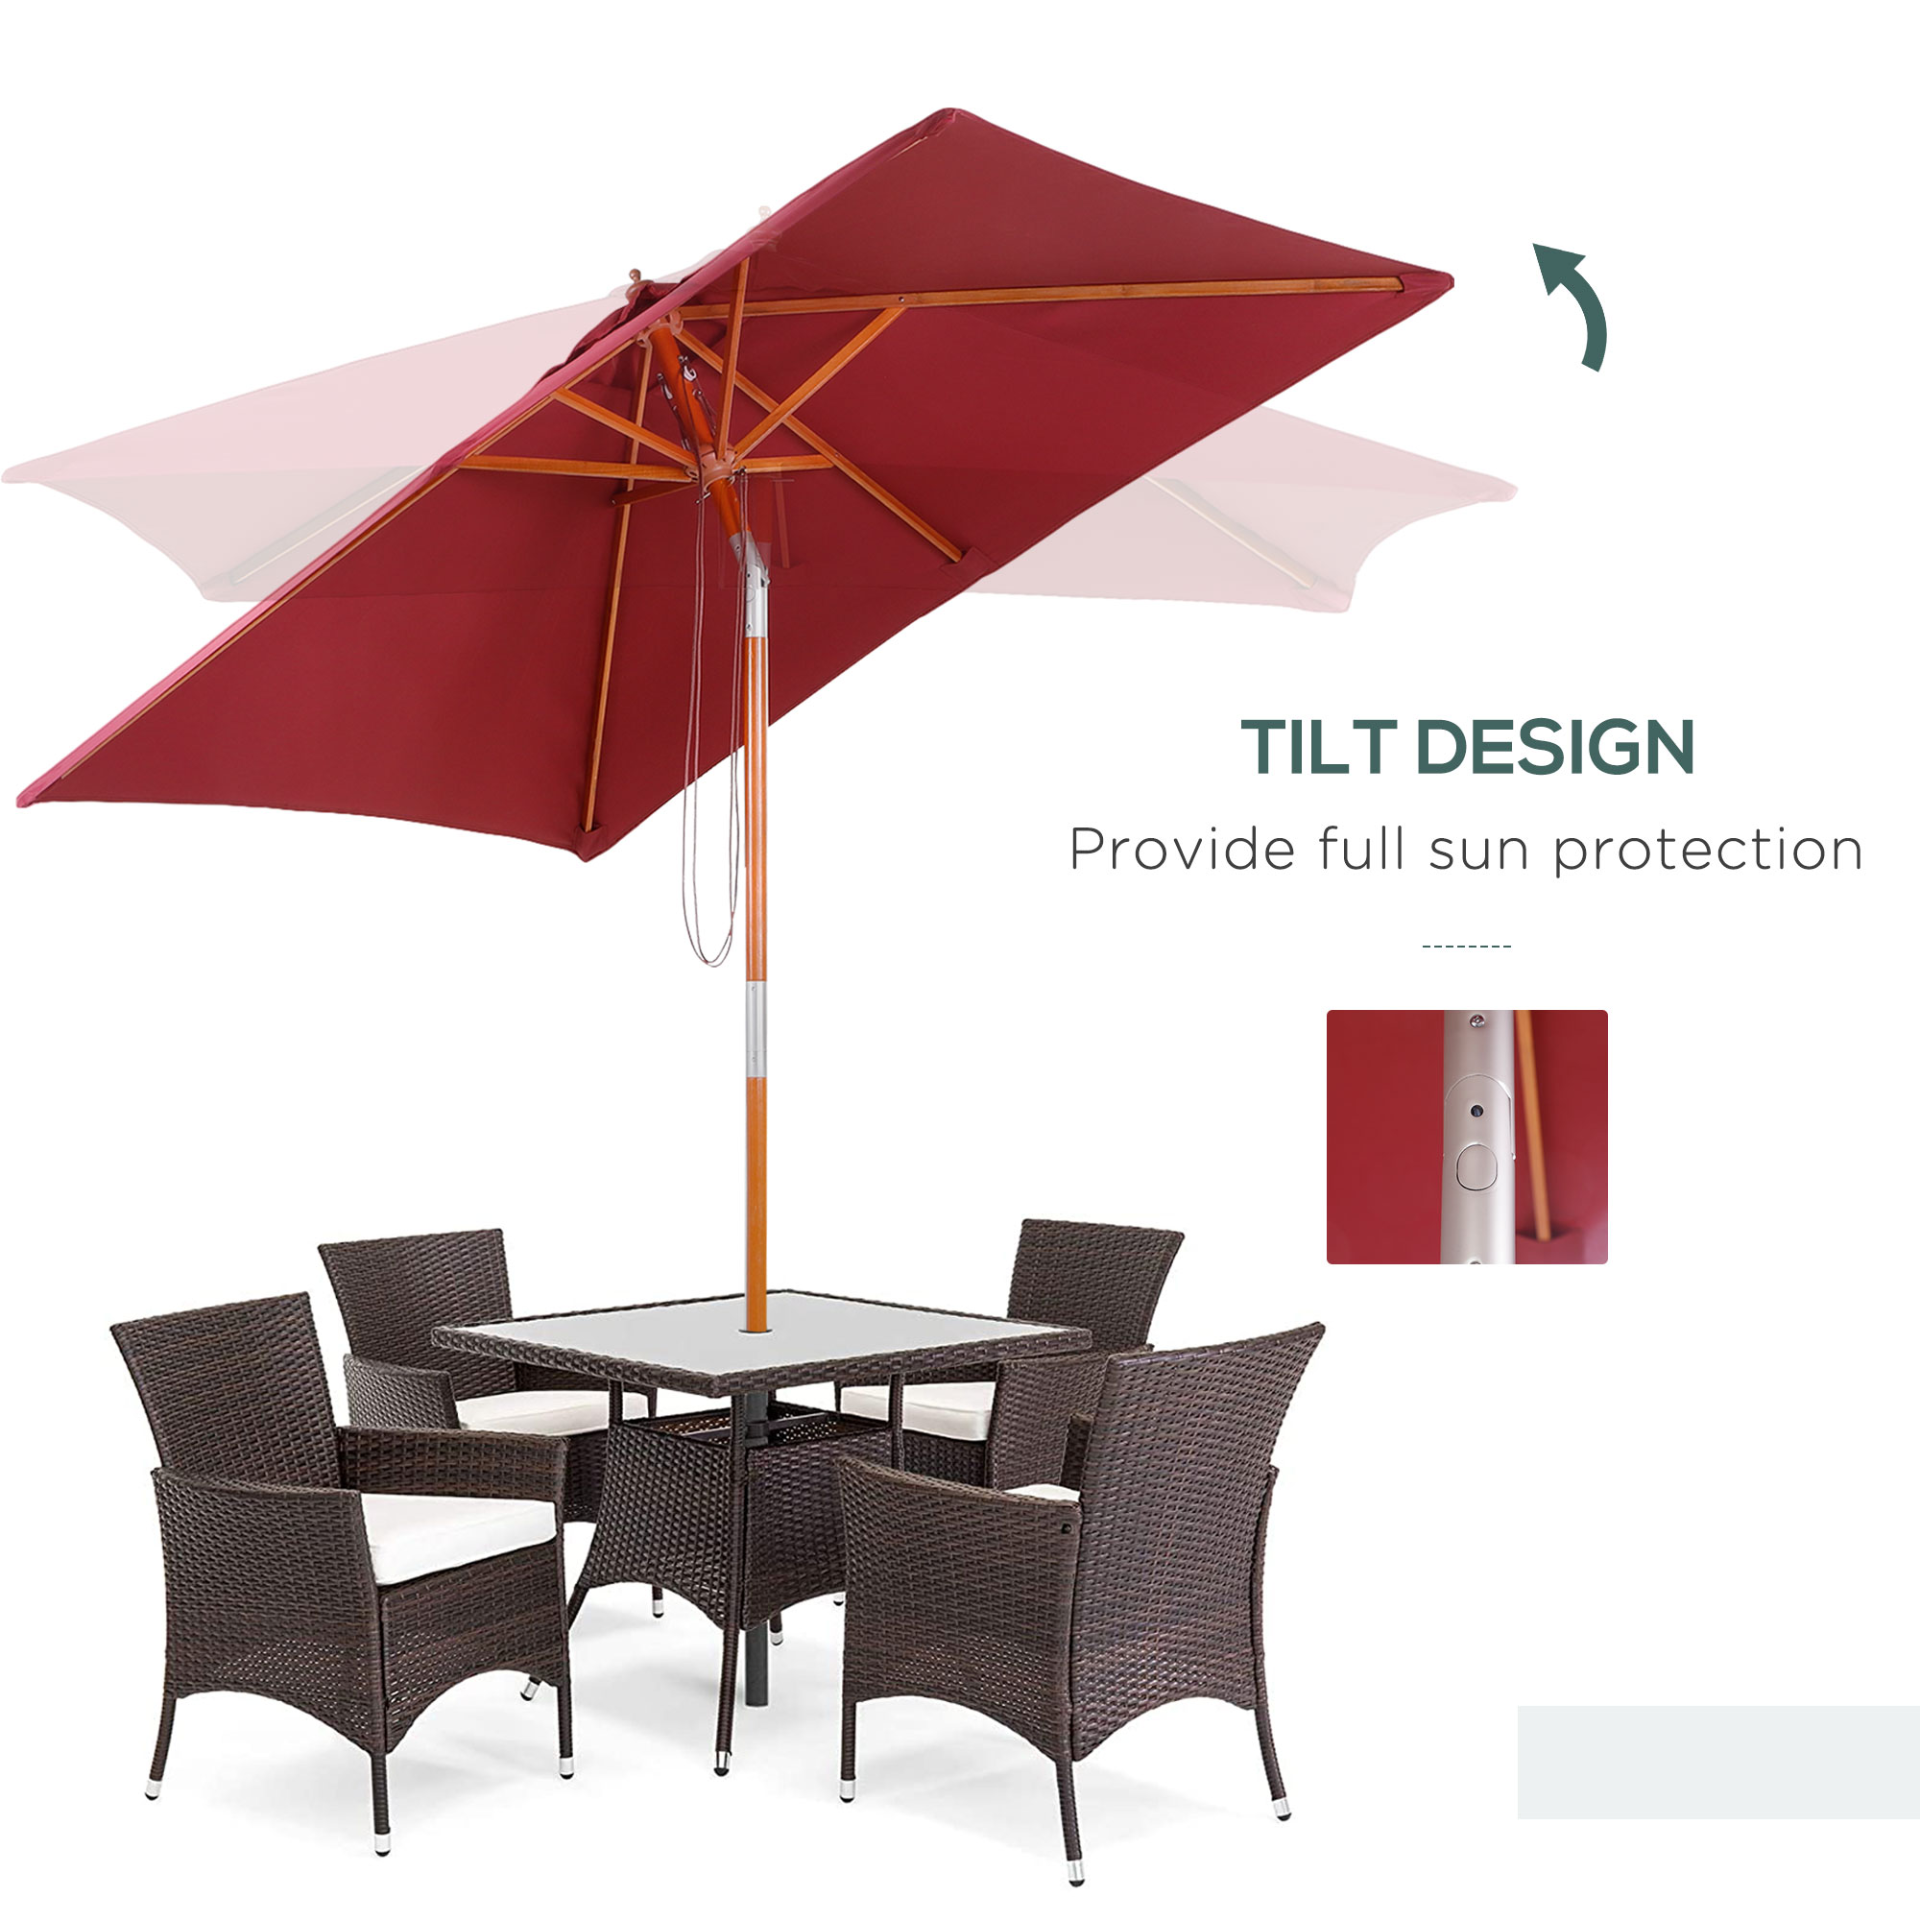 Outsunny 2m x 1.5m Patio Parasol Garden Umbrellas Sun Umbrella Bamboo Sunshade Canopy Outdoor Backyard Furniture Fir Wooden Pole 6 Ribs Tilt Mechanism - Wine Red